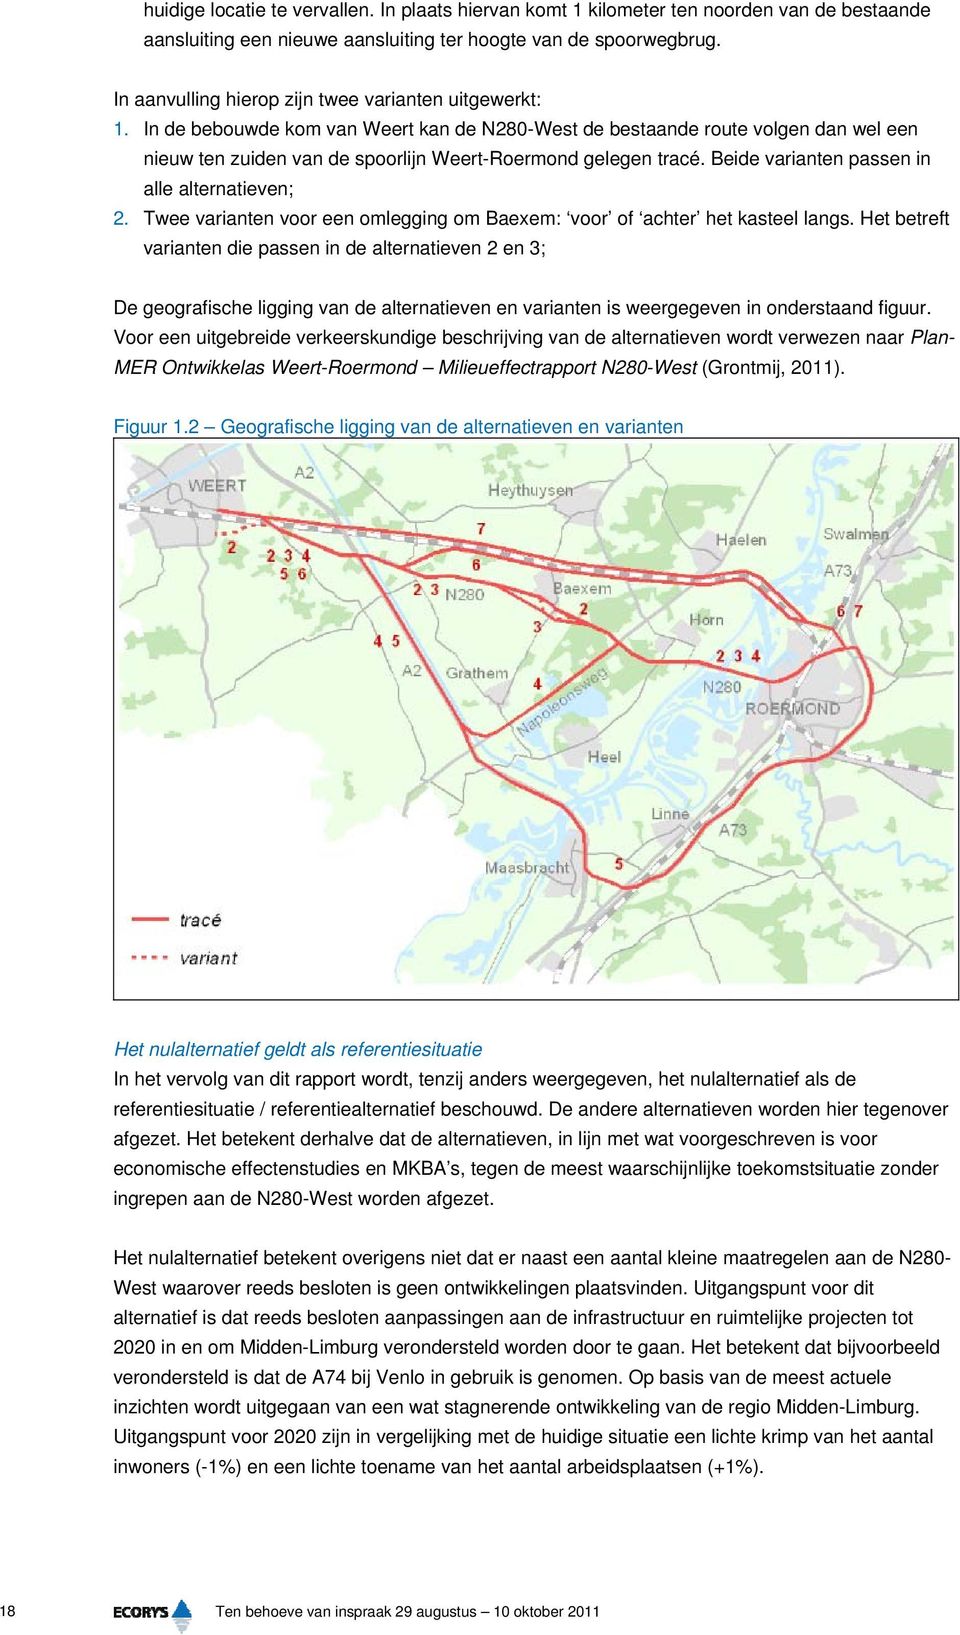 In de bebouwde kom van Weert kan de N280-West de bestaande route volgen dan wel een nieuw ten zuiden van de spoorlijn Weert-Roermond gelegen tracé. Beide varianten passen in alle alternatieven; 2.